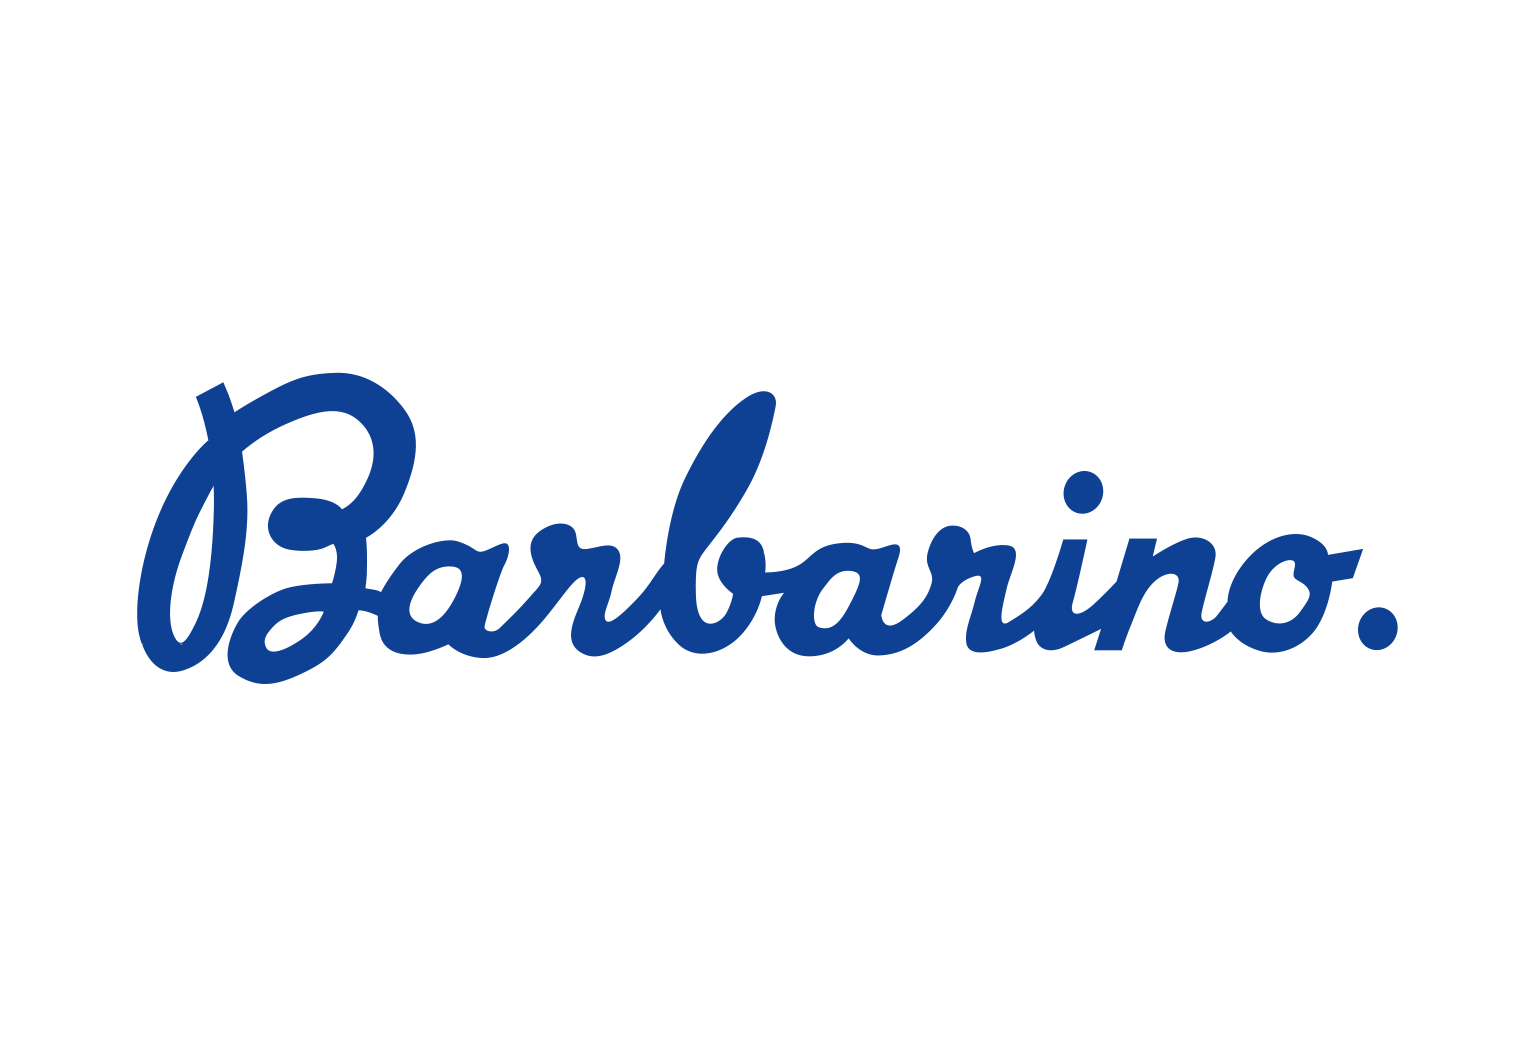 Logo Barbarino